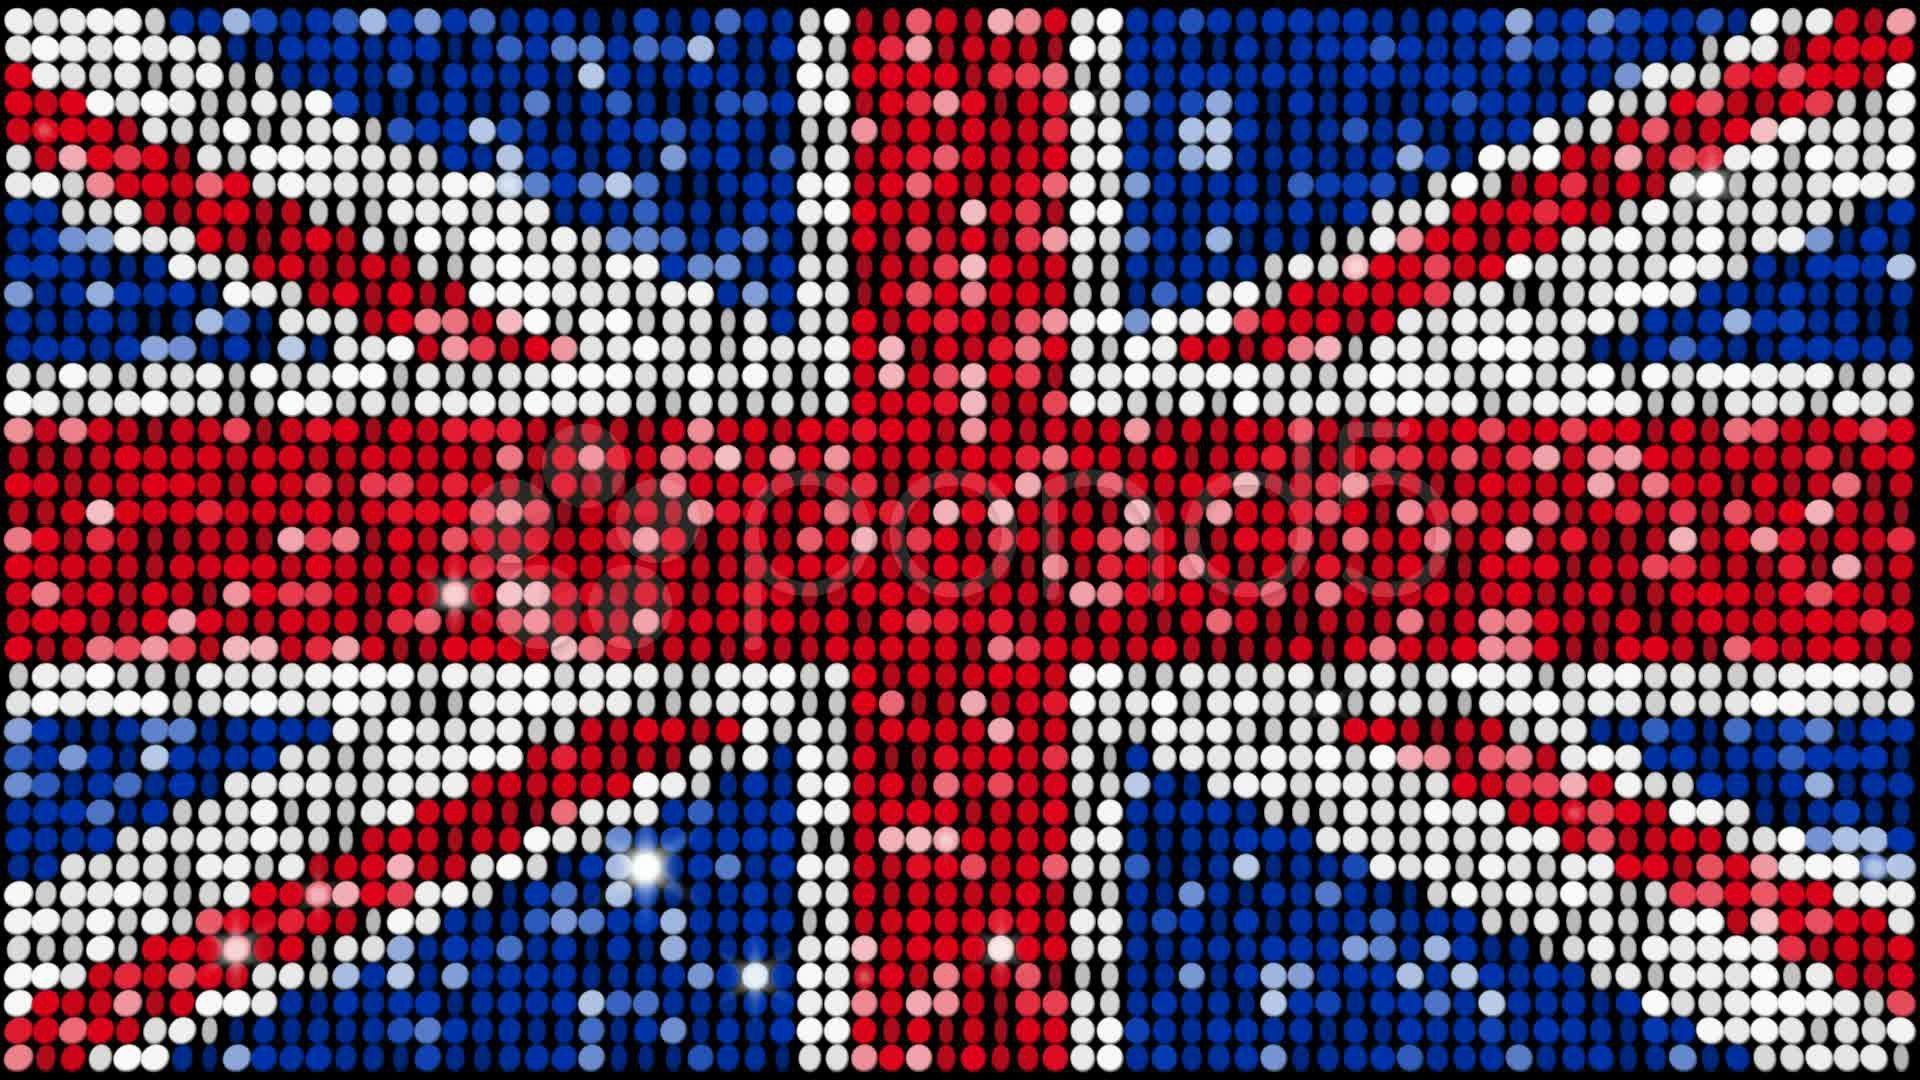 1920x1080 1600x1024 British Flag iPhone Wallpaper - WallpaperSafari">